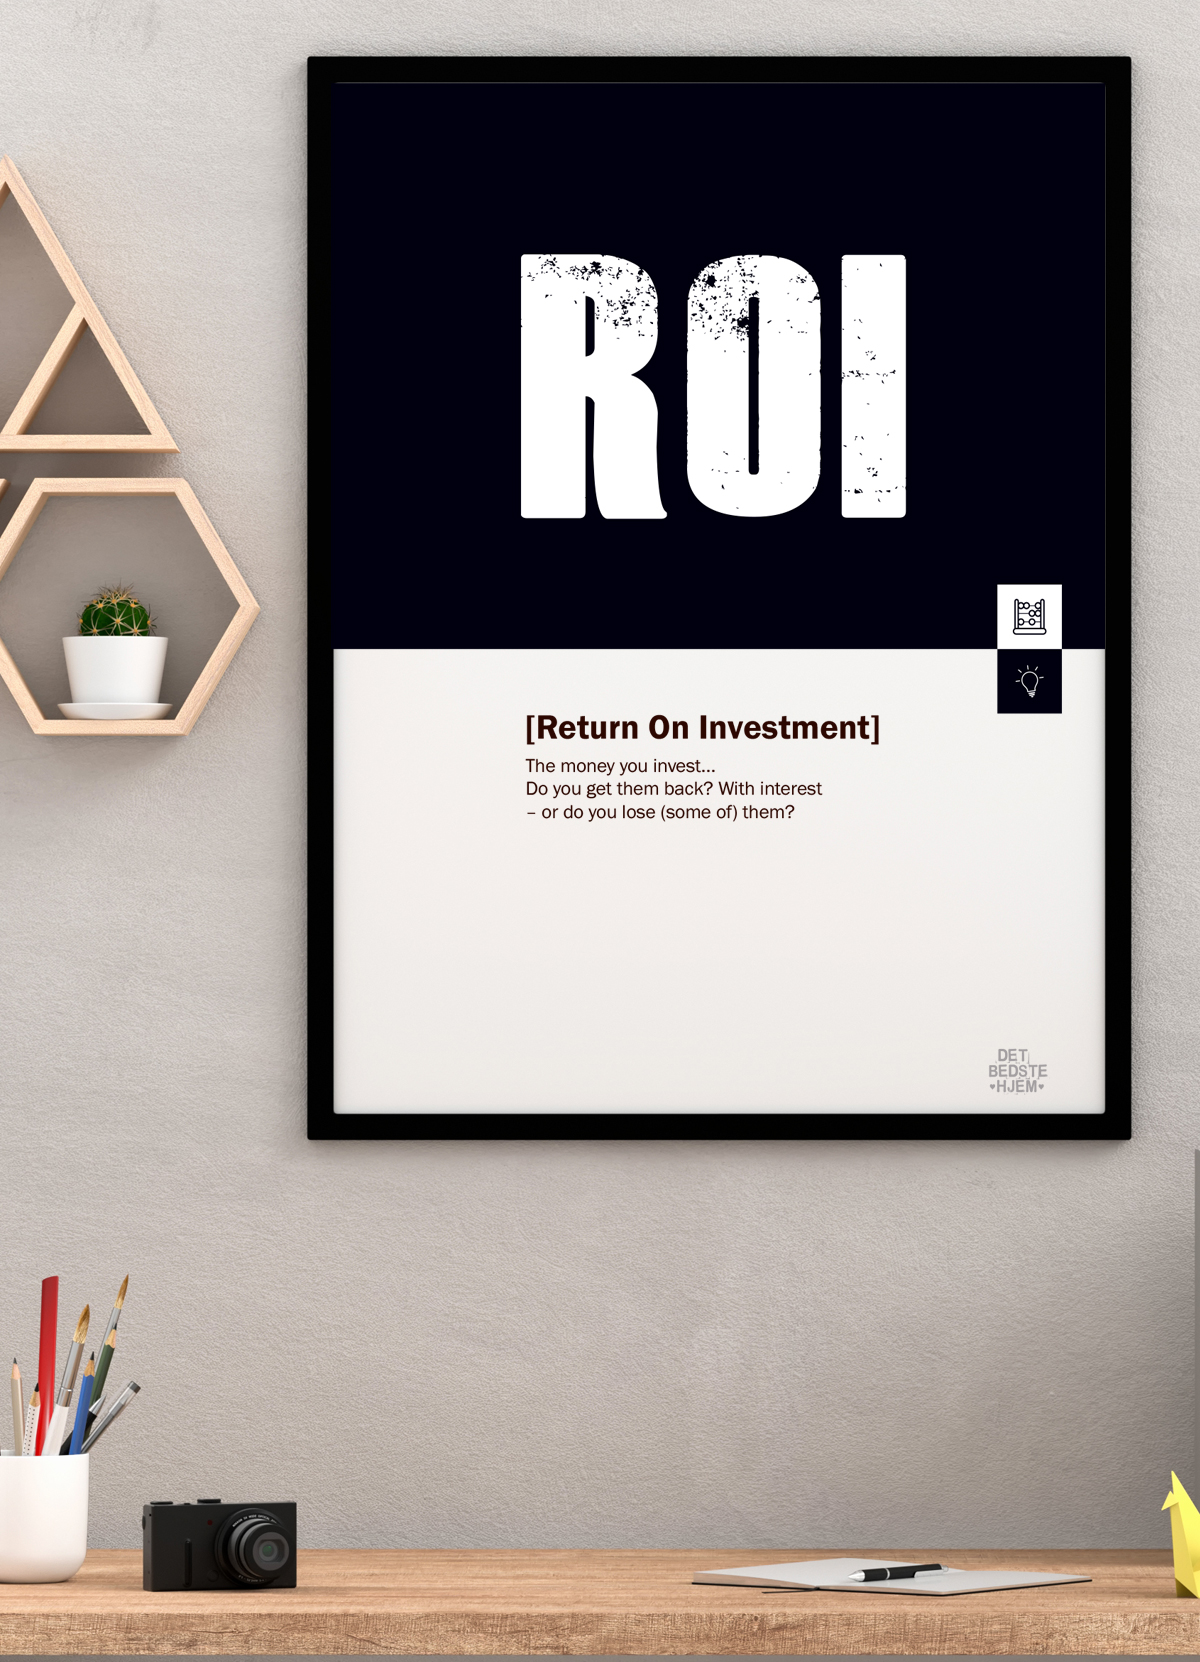 Se ROI-marketing-plakat - 30 x 40 cm - Kr. 219,- hos Detbedstehjem.dk